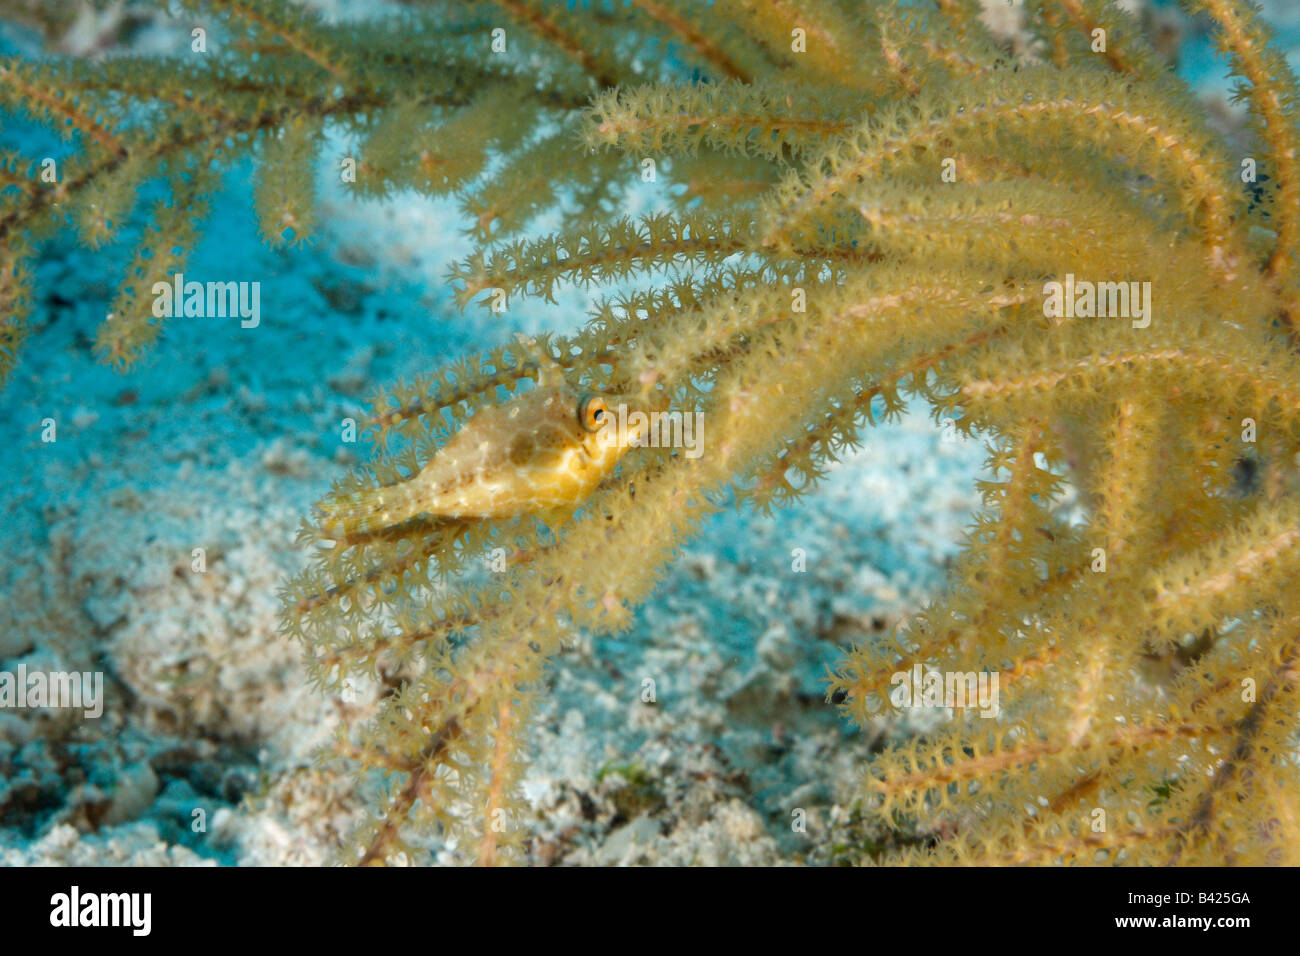 Un diminuto slender filefish escondido entre las ramas, camuflado para que coincida con el color del coral de fuego con lomo foredorsal extended Foto de stock